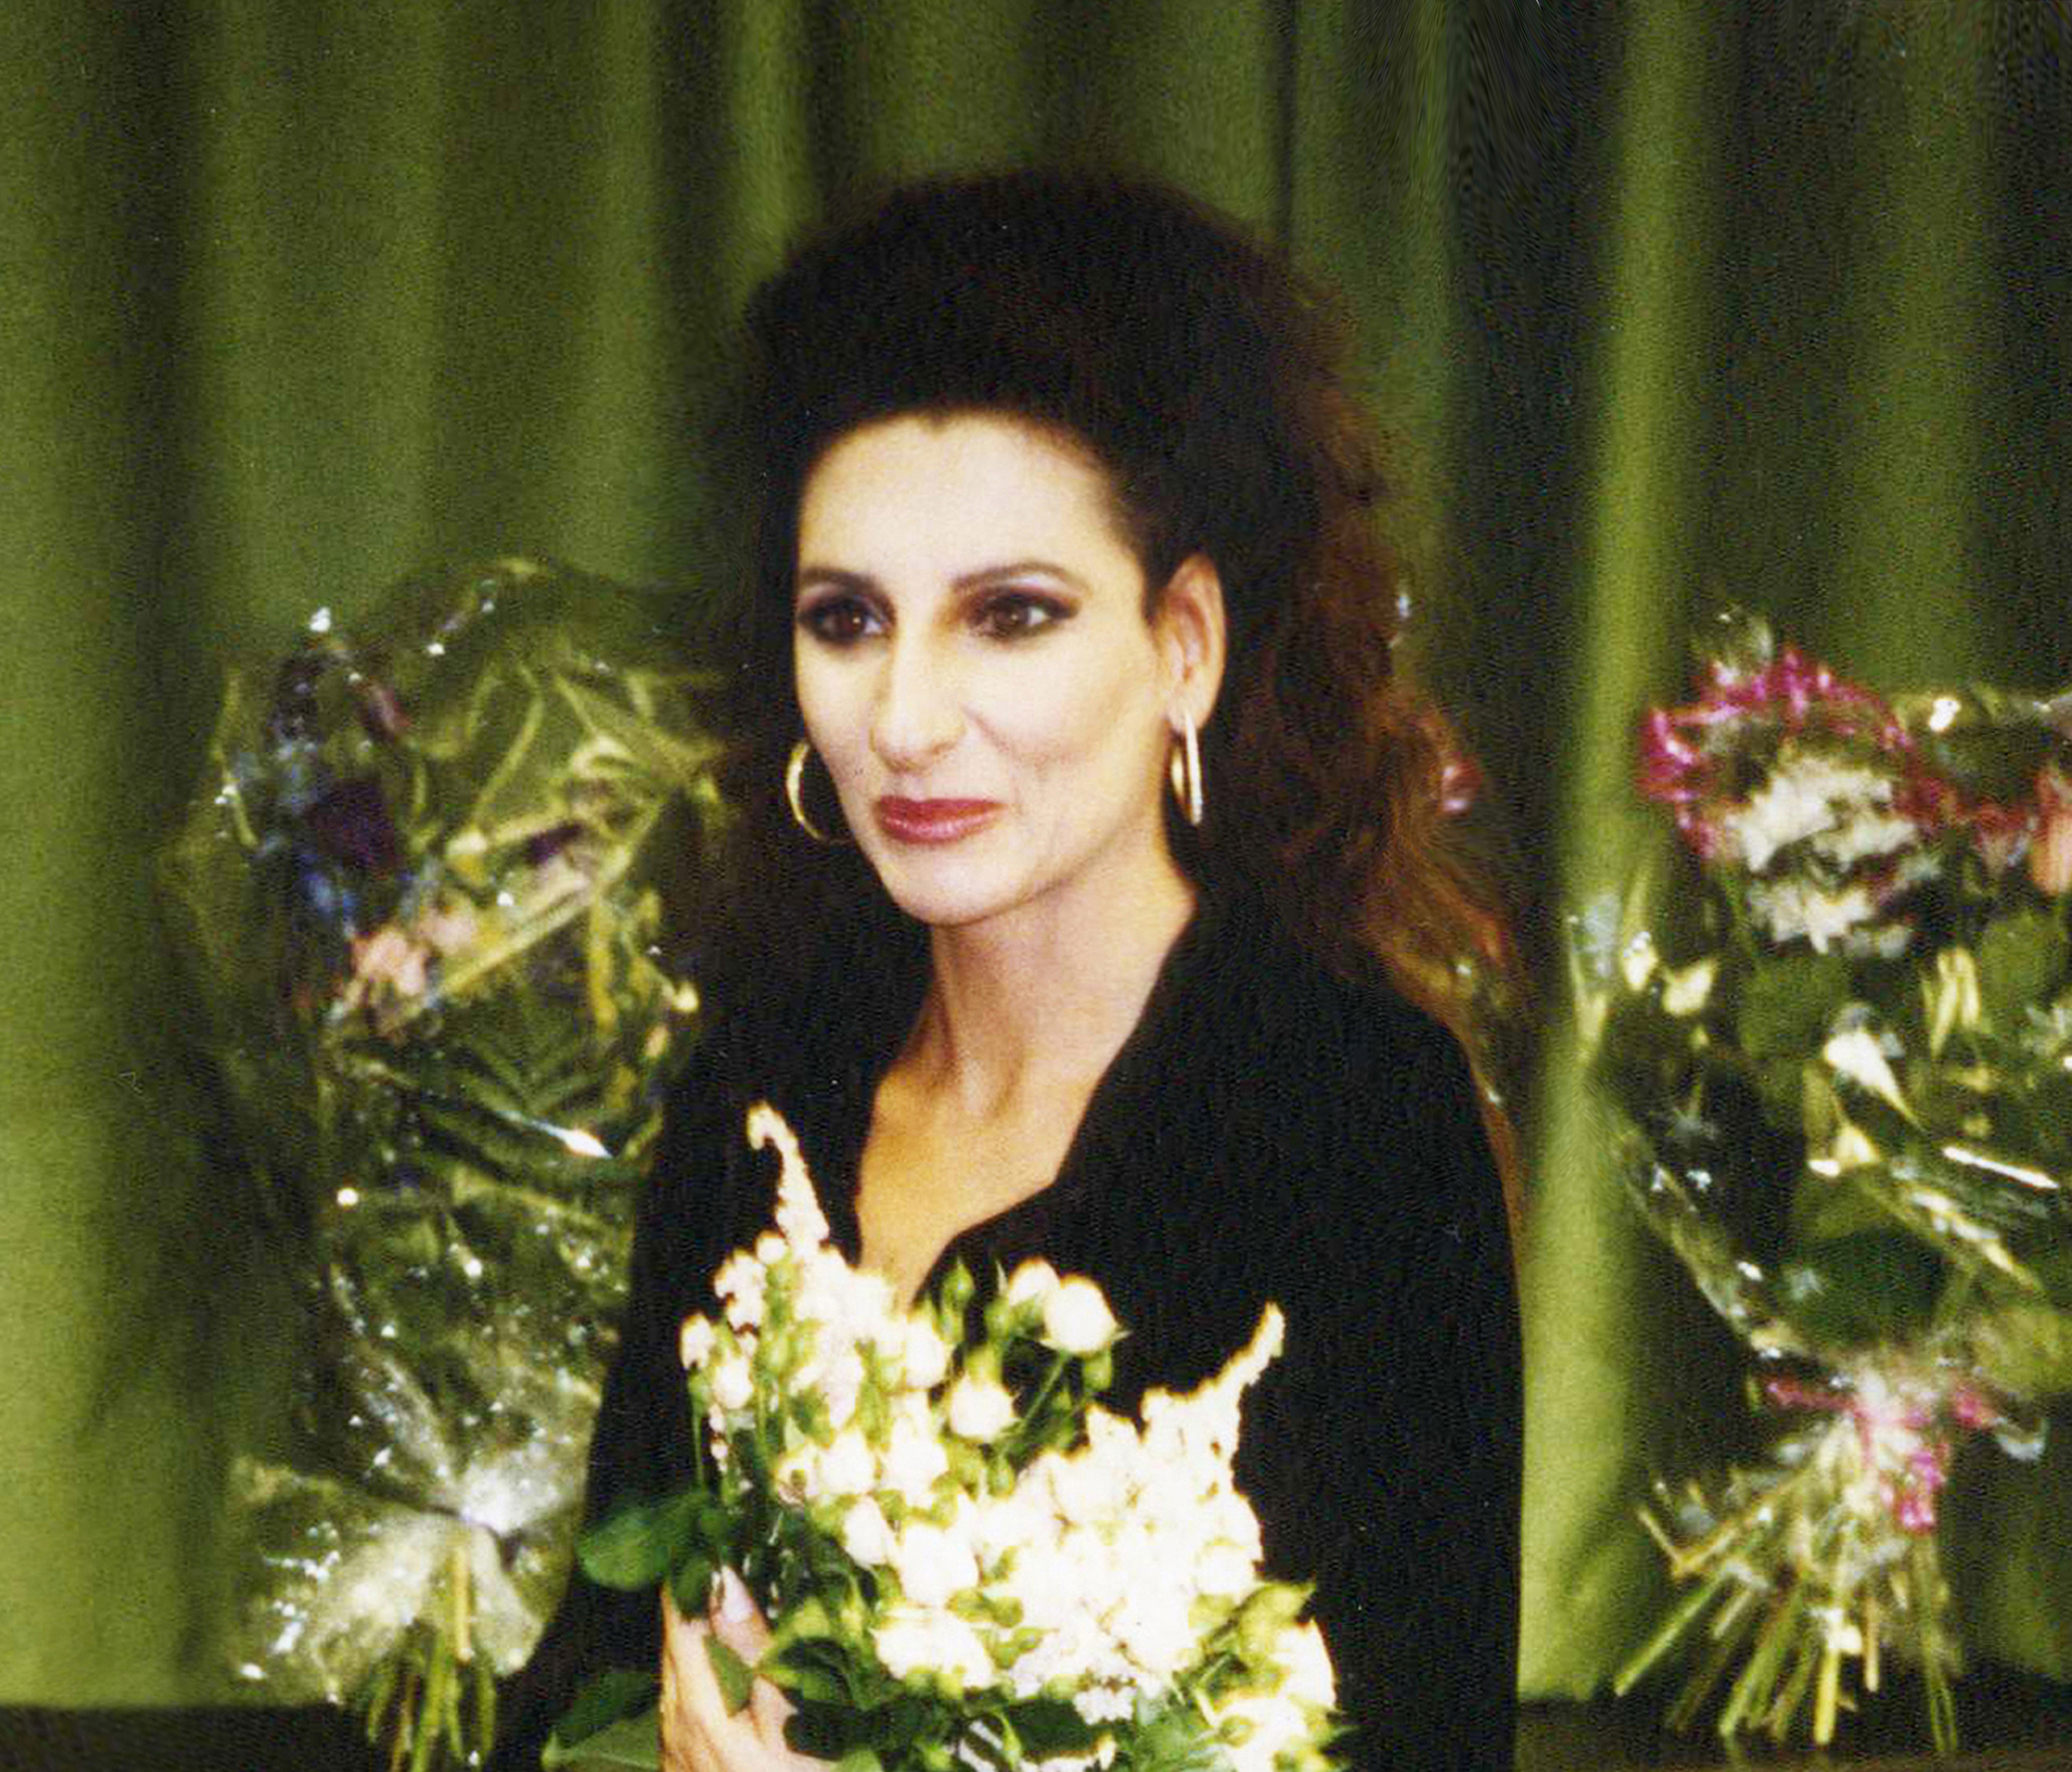 Lucia Aliberti⚘Deutsche Oper⚘Berlin⚘Opera⚘Lucia di Lammermoor⚘Portrait Series⚘Dressing Room⚘Makeup Session⚘Autograph Session⚘:http://www.luciaaliberti.it #luciaaliberti #deutscheoper #berlin #luciadilammermoor #opera #portraitseries #dressingroom #makeupsession #autographsession